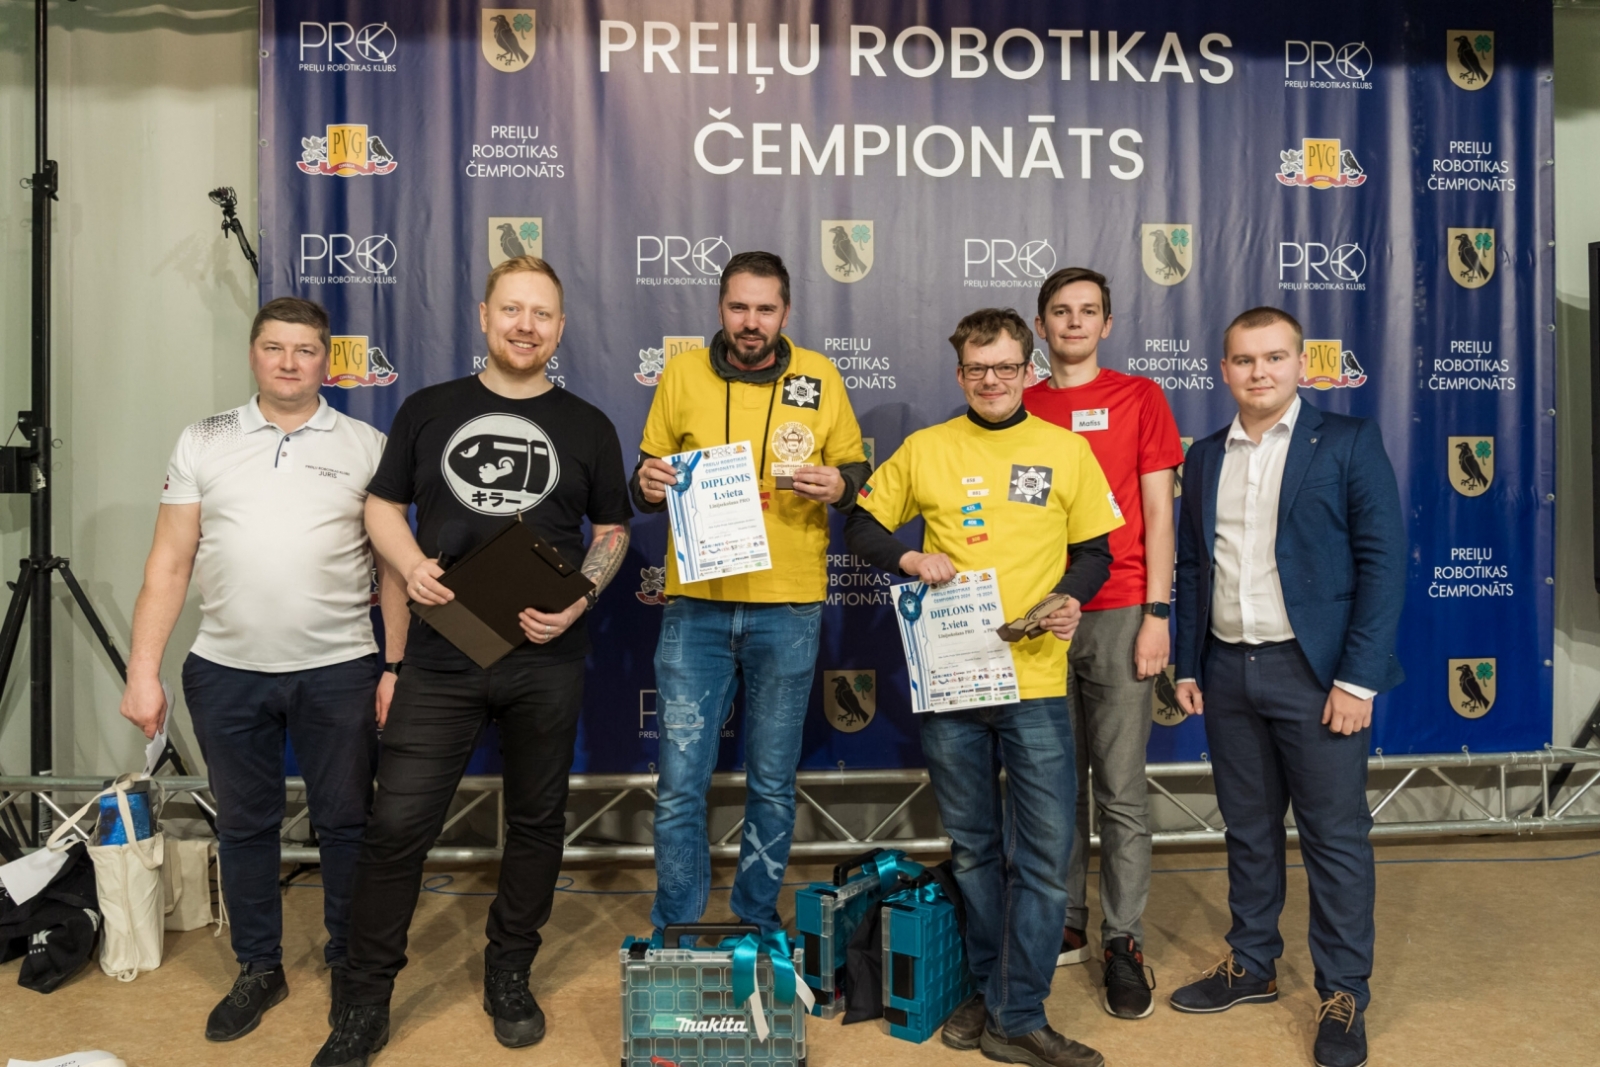 Aizvadīts 16. Latvijas robotikas čempionāta 6. Preiļu robotikas čempionāta posms